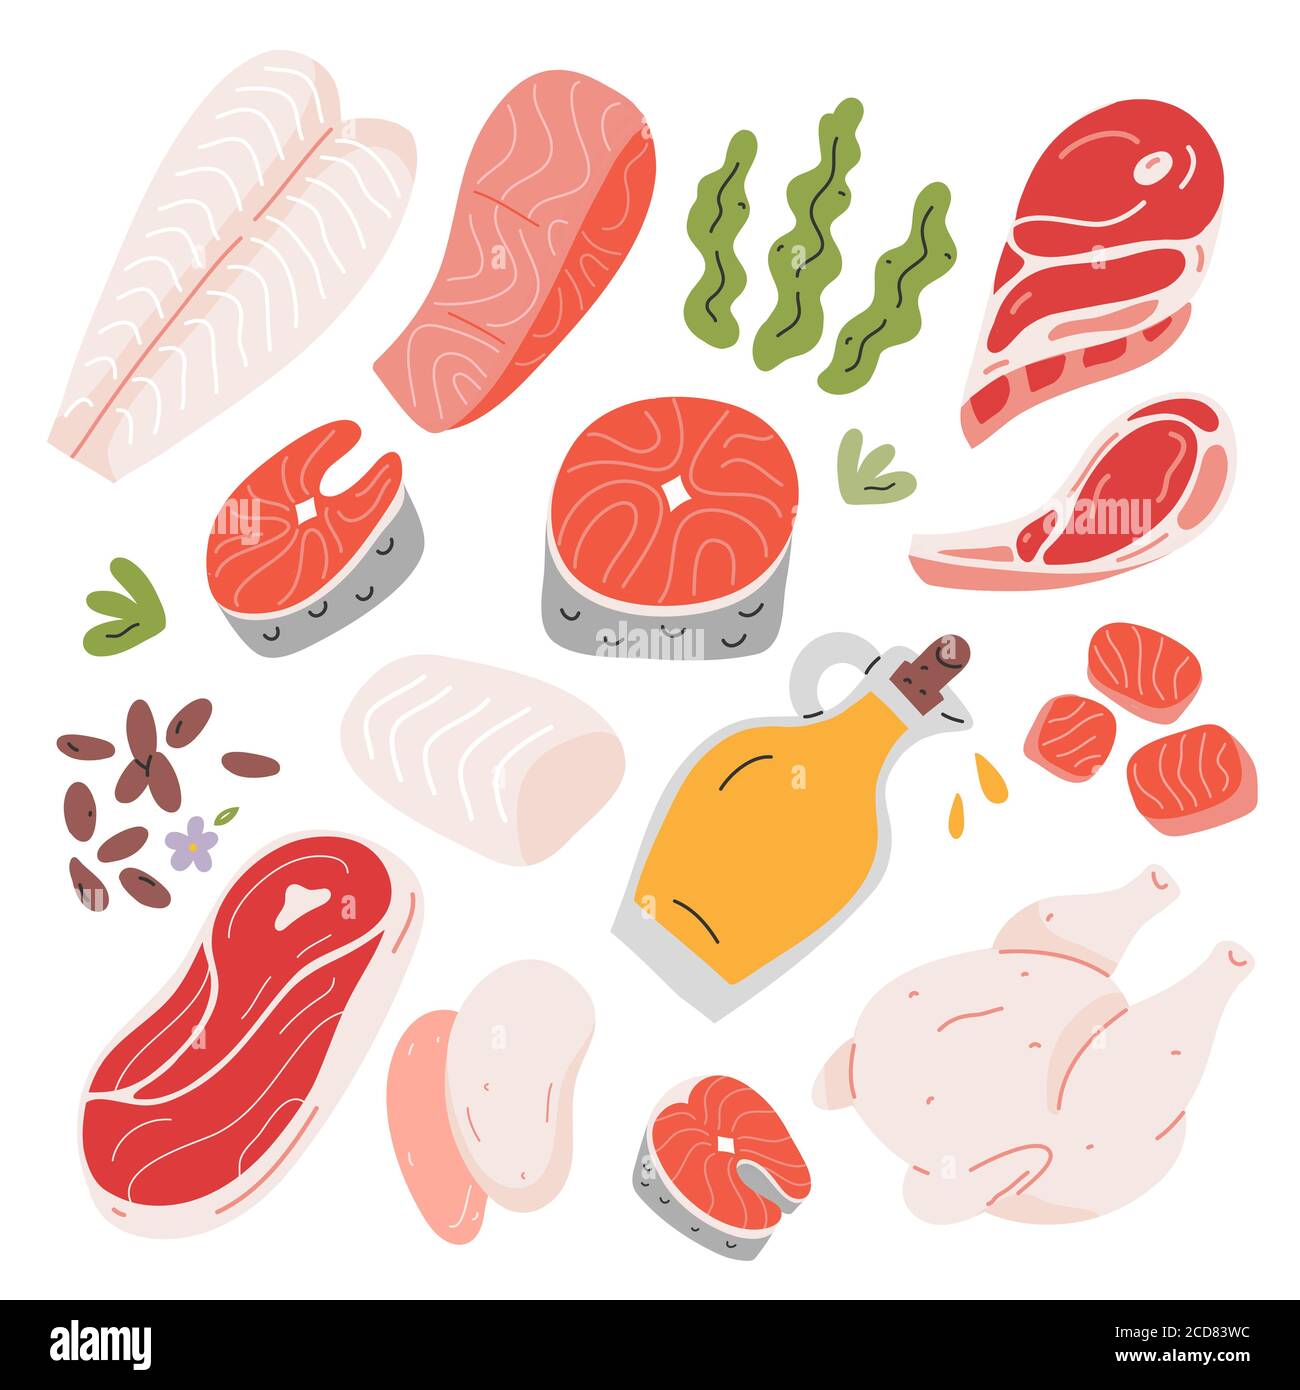 Cucina ingredienti alimentari, carne di manzo e di agnello, salmone e filetto di pesce bianco e bistecca, illustrazione vettoriale disegnata a mano, icone isolate, semi di lino e. Illustrazione Vettoriale